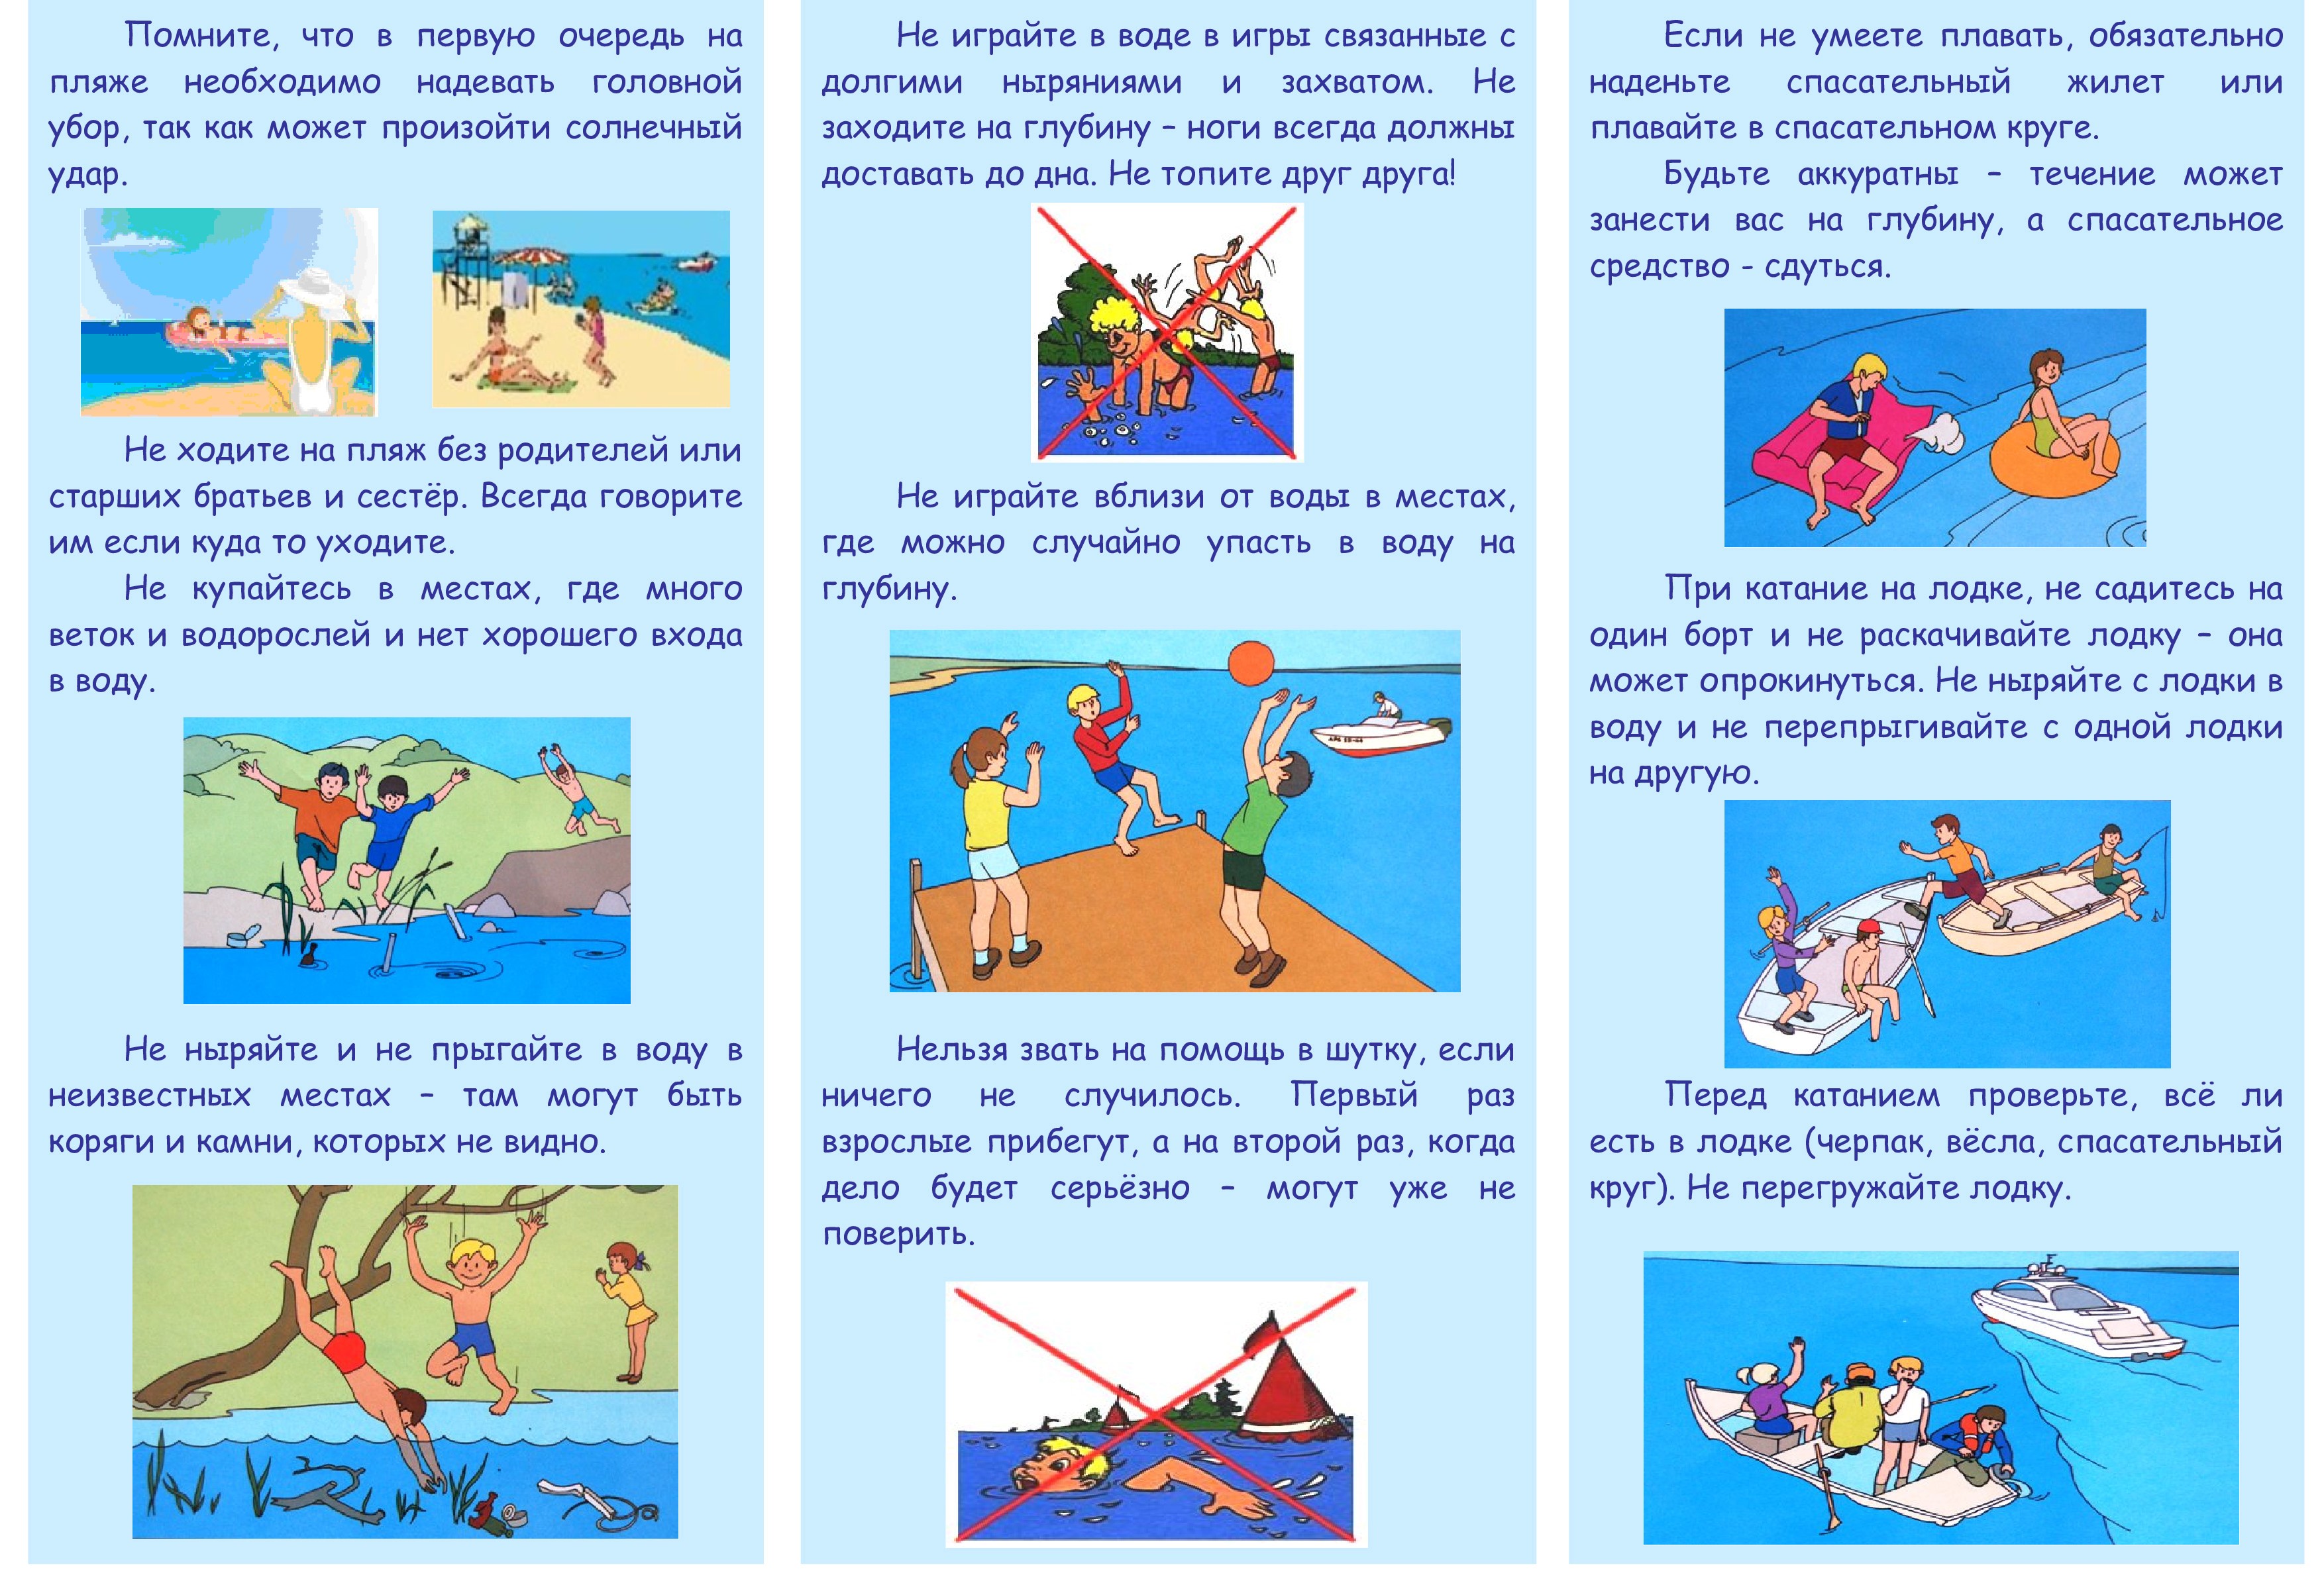 Безопасное поведение детей на водных объектах. Поведение на водоемах летом. Правила поведения на воде. Памяткабезопасност на воде. Безопасное поведение на воде для детей.